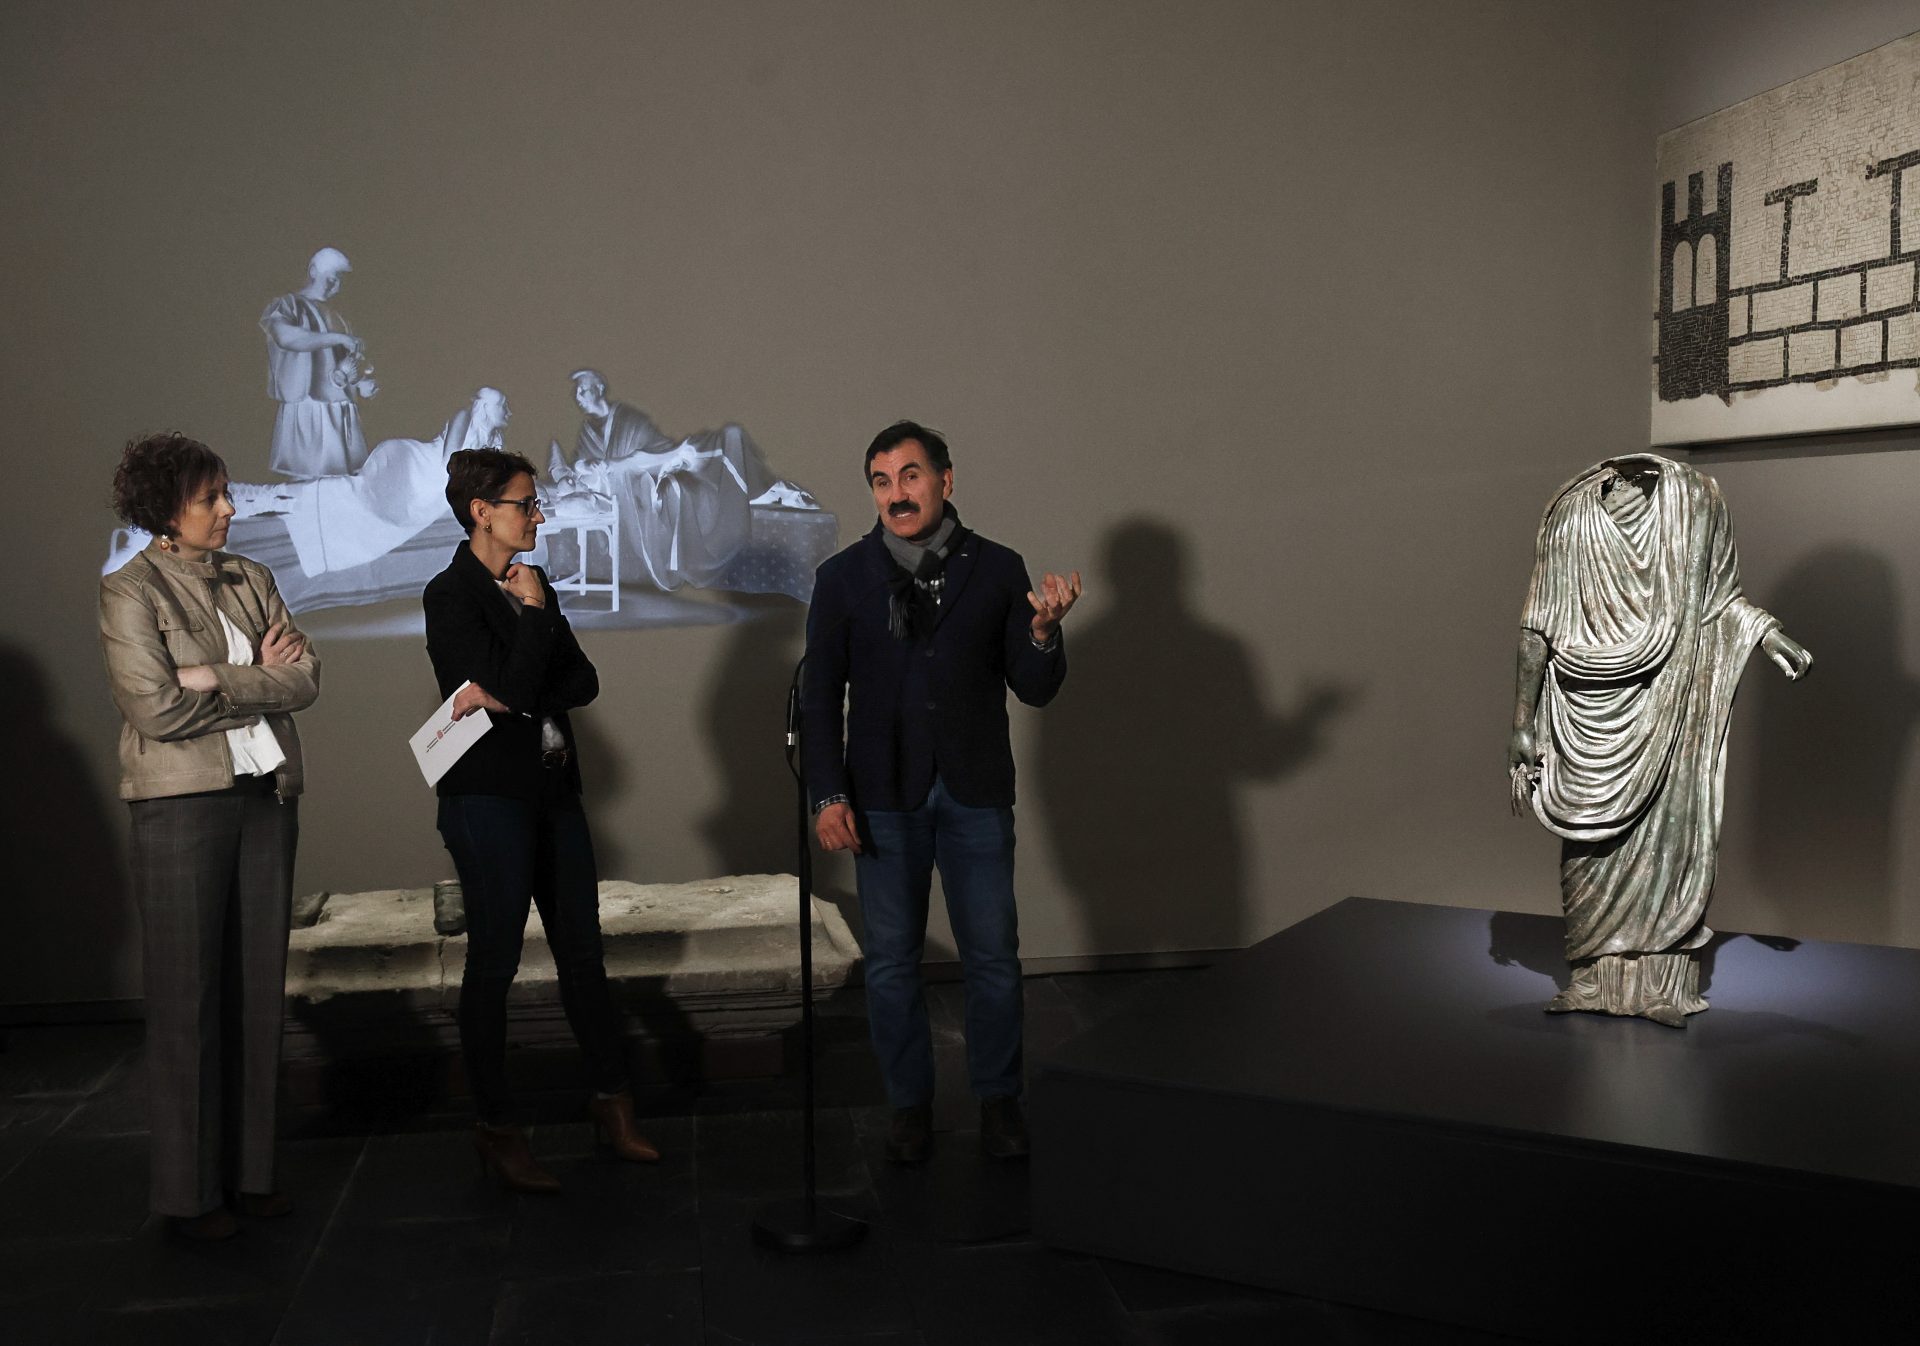 El arqueólogo Jesús Sesma explica a la presidenta de Navarra y la consejera de Cultura detalles de la escultura “El togado de Pompelo”